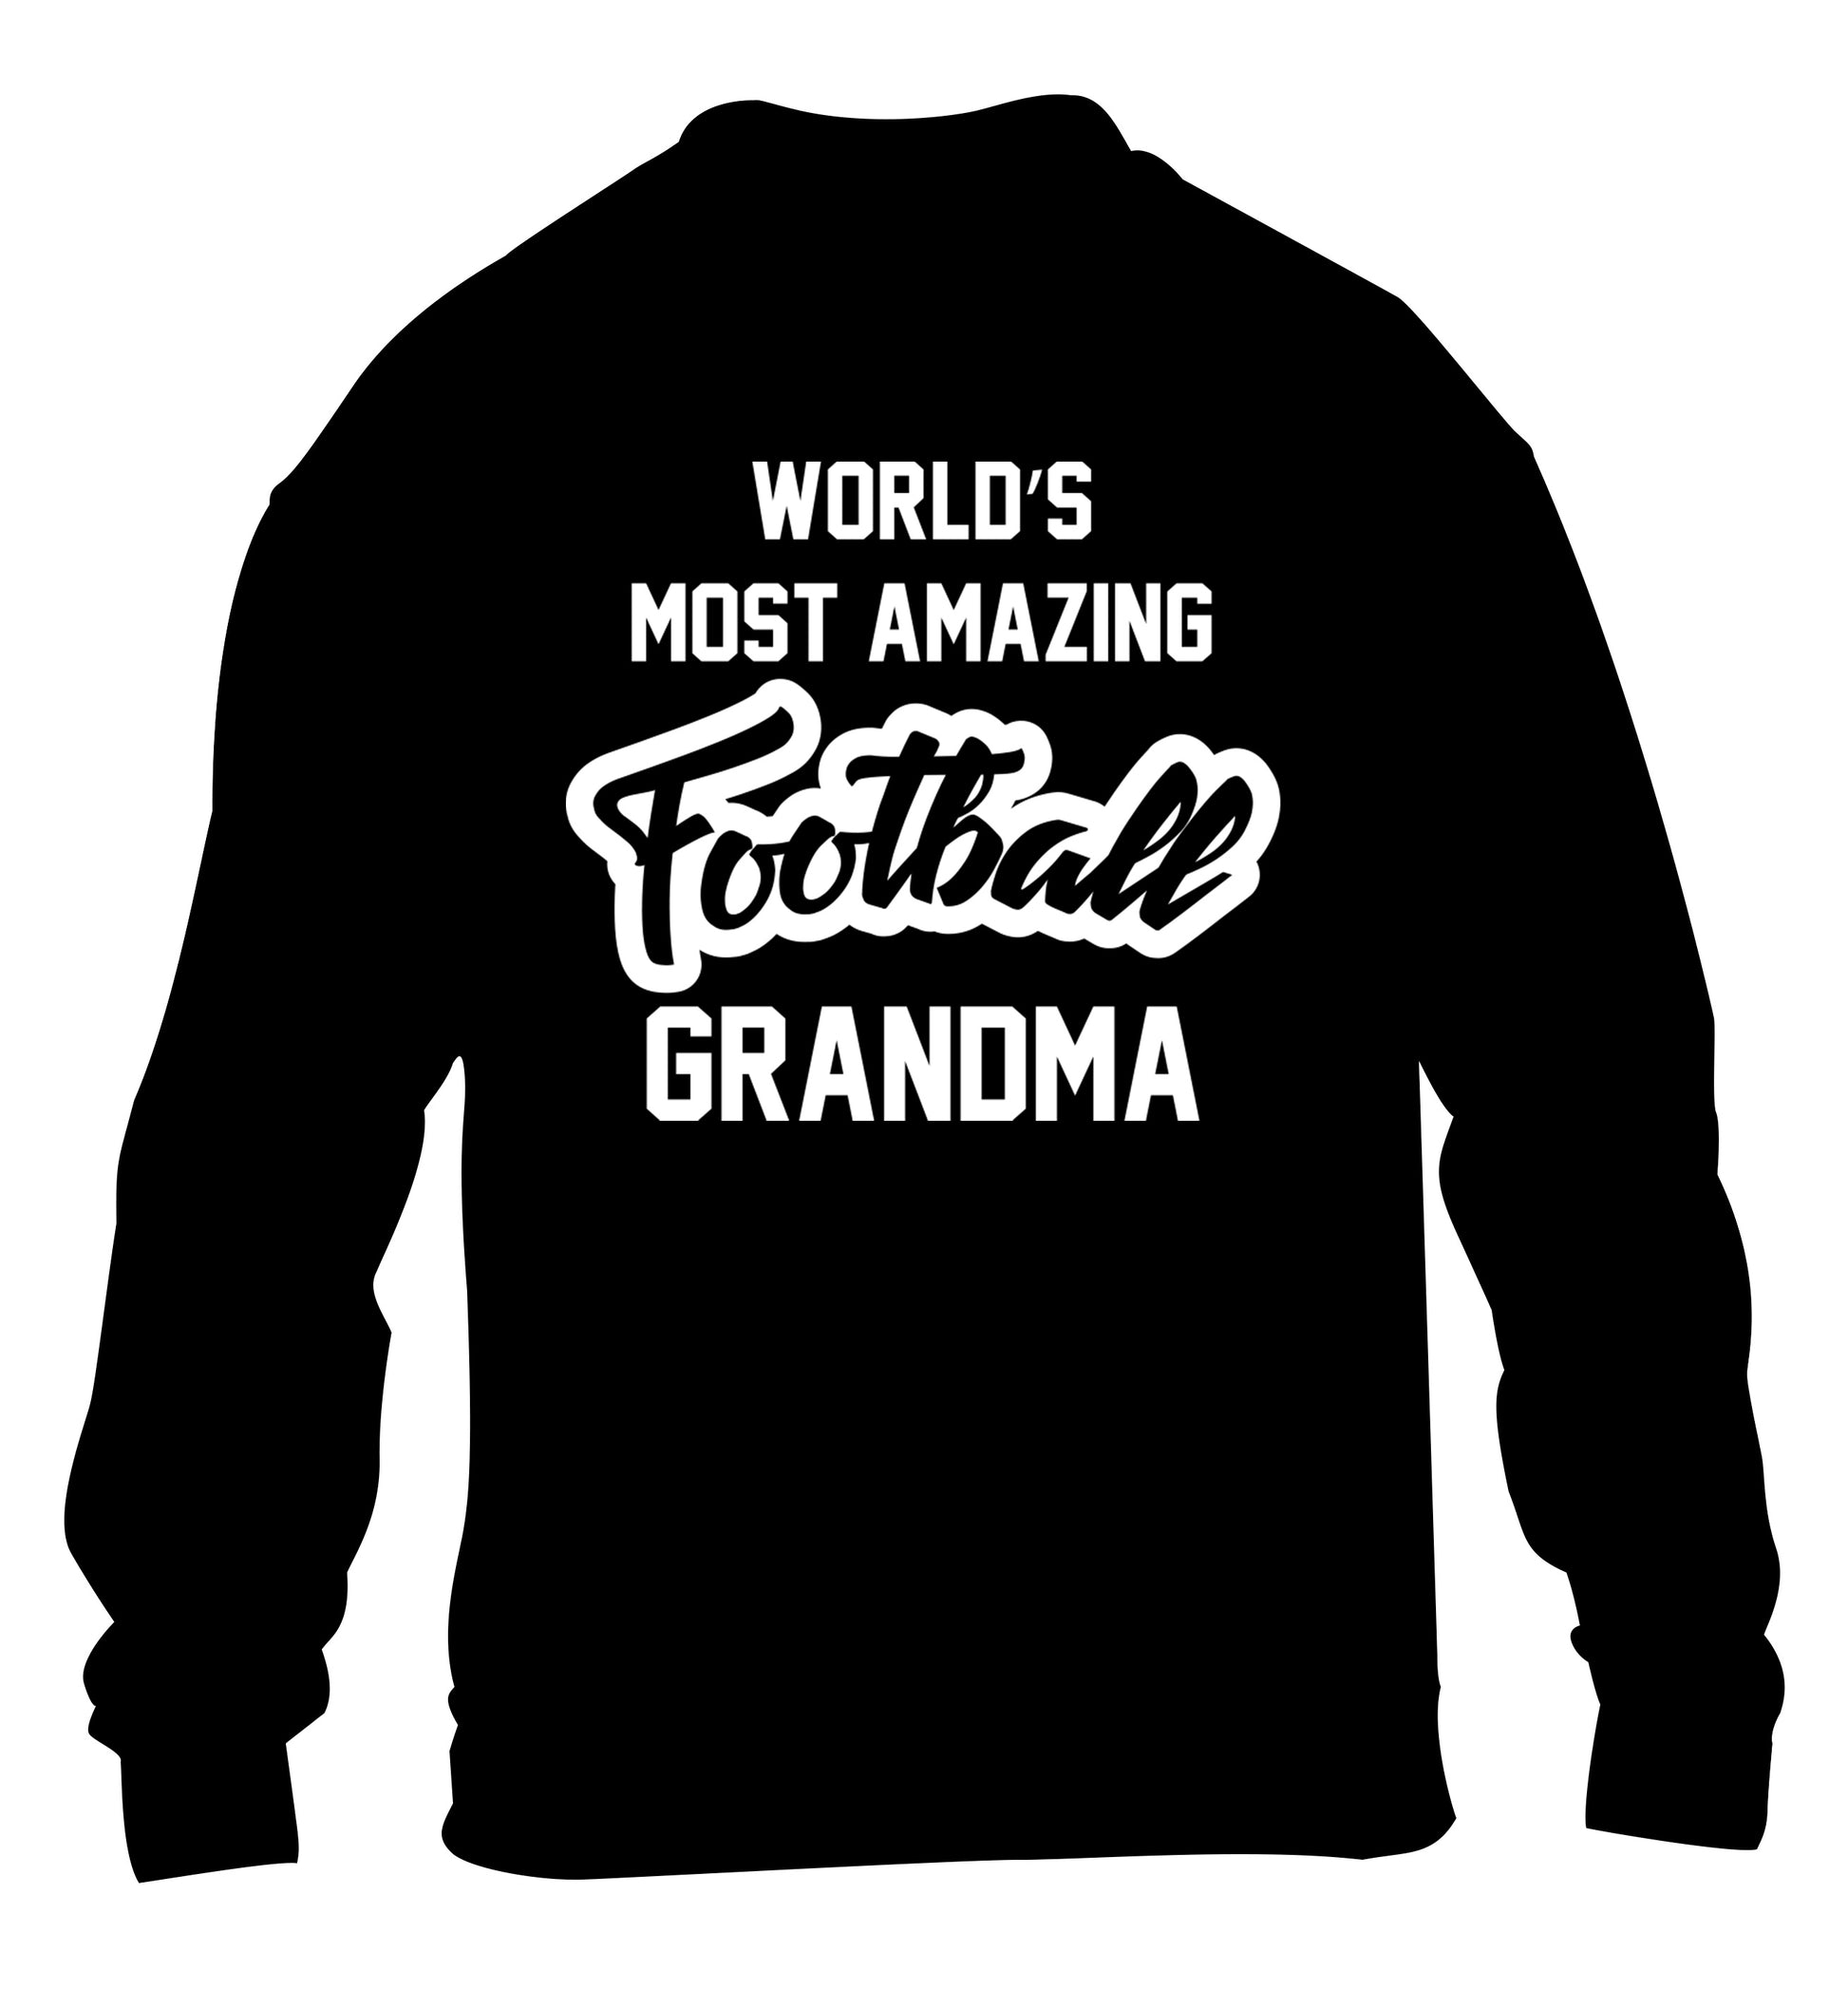 Worlds most amazing football grandma children's black sweater 12-14 Years